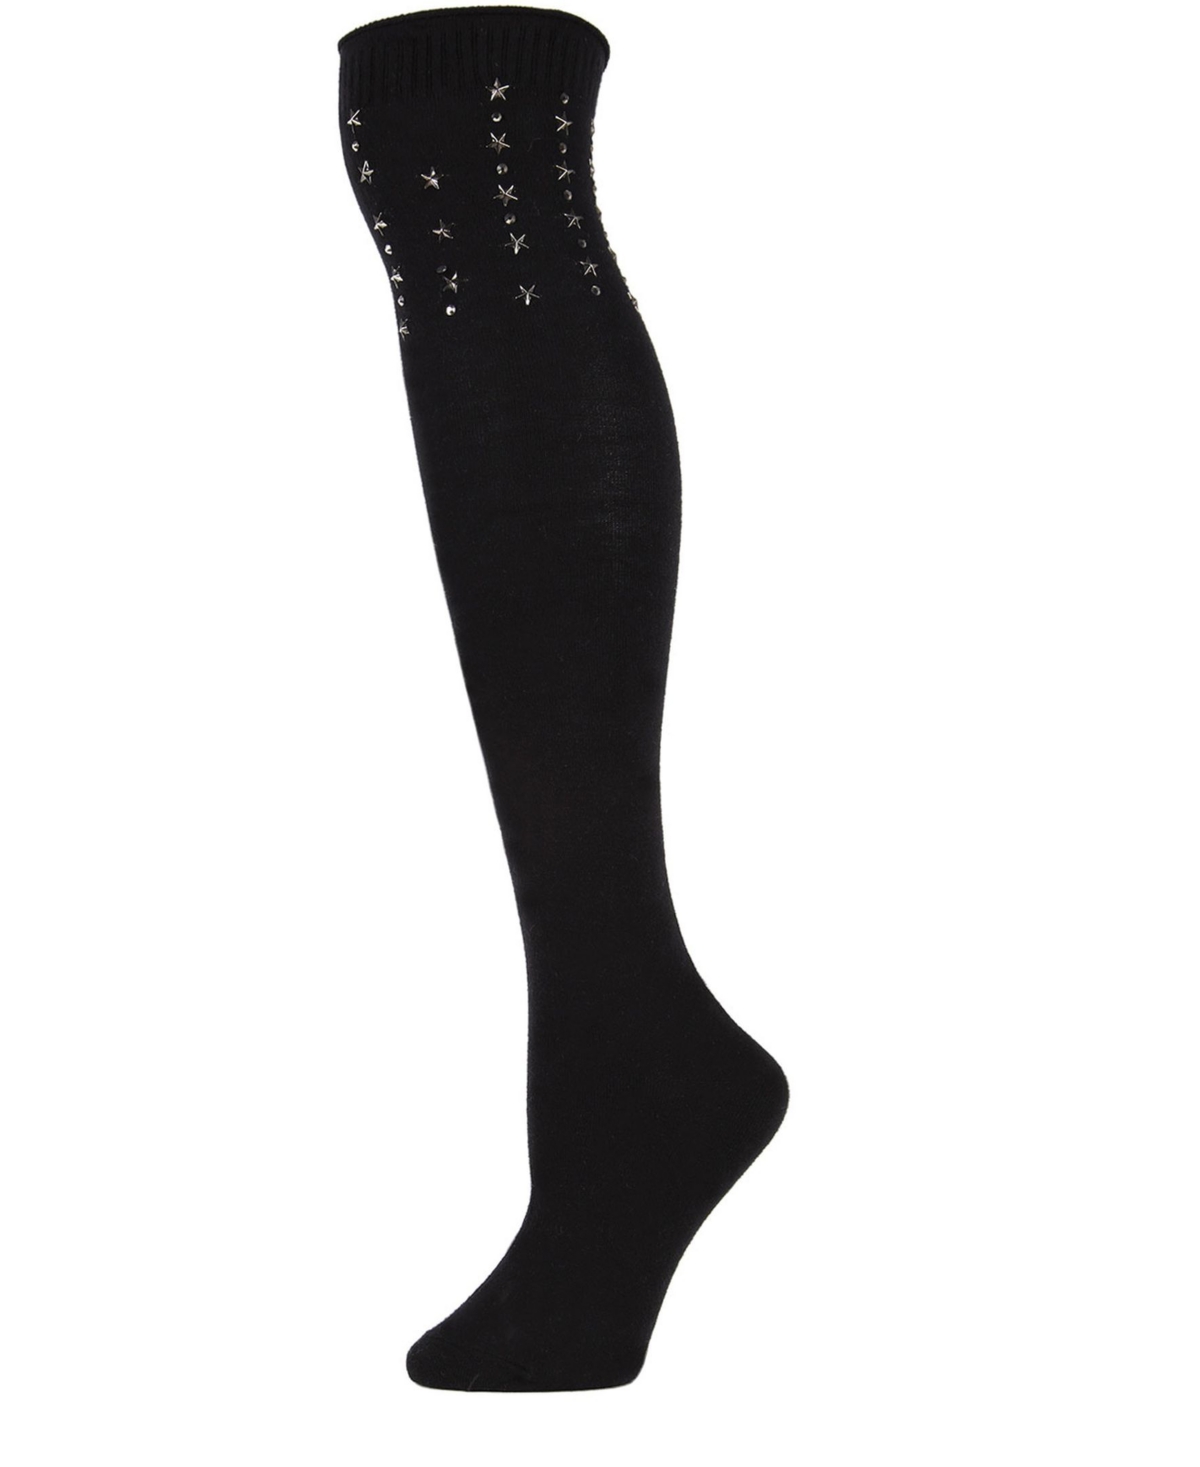 Evening Star Women's Over The Knee Socks - Black